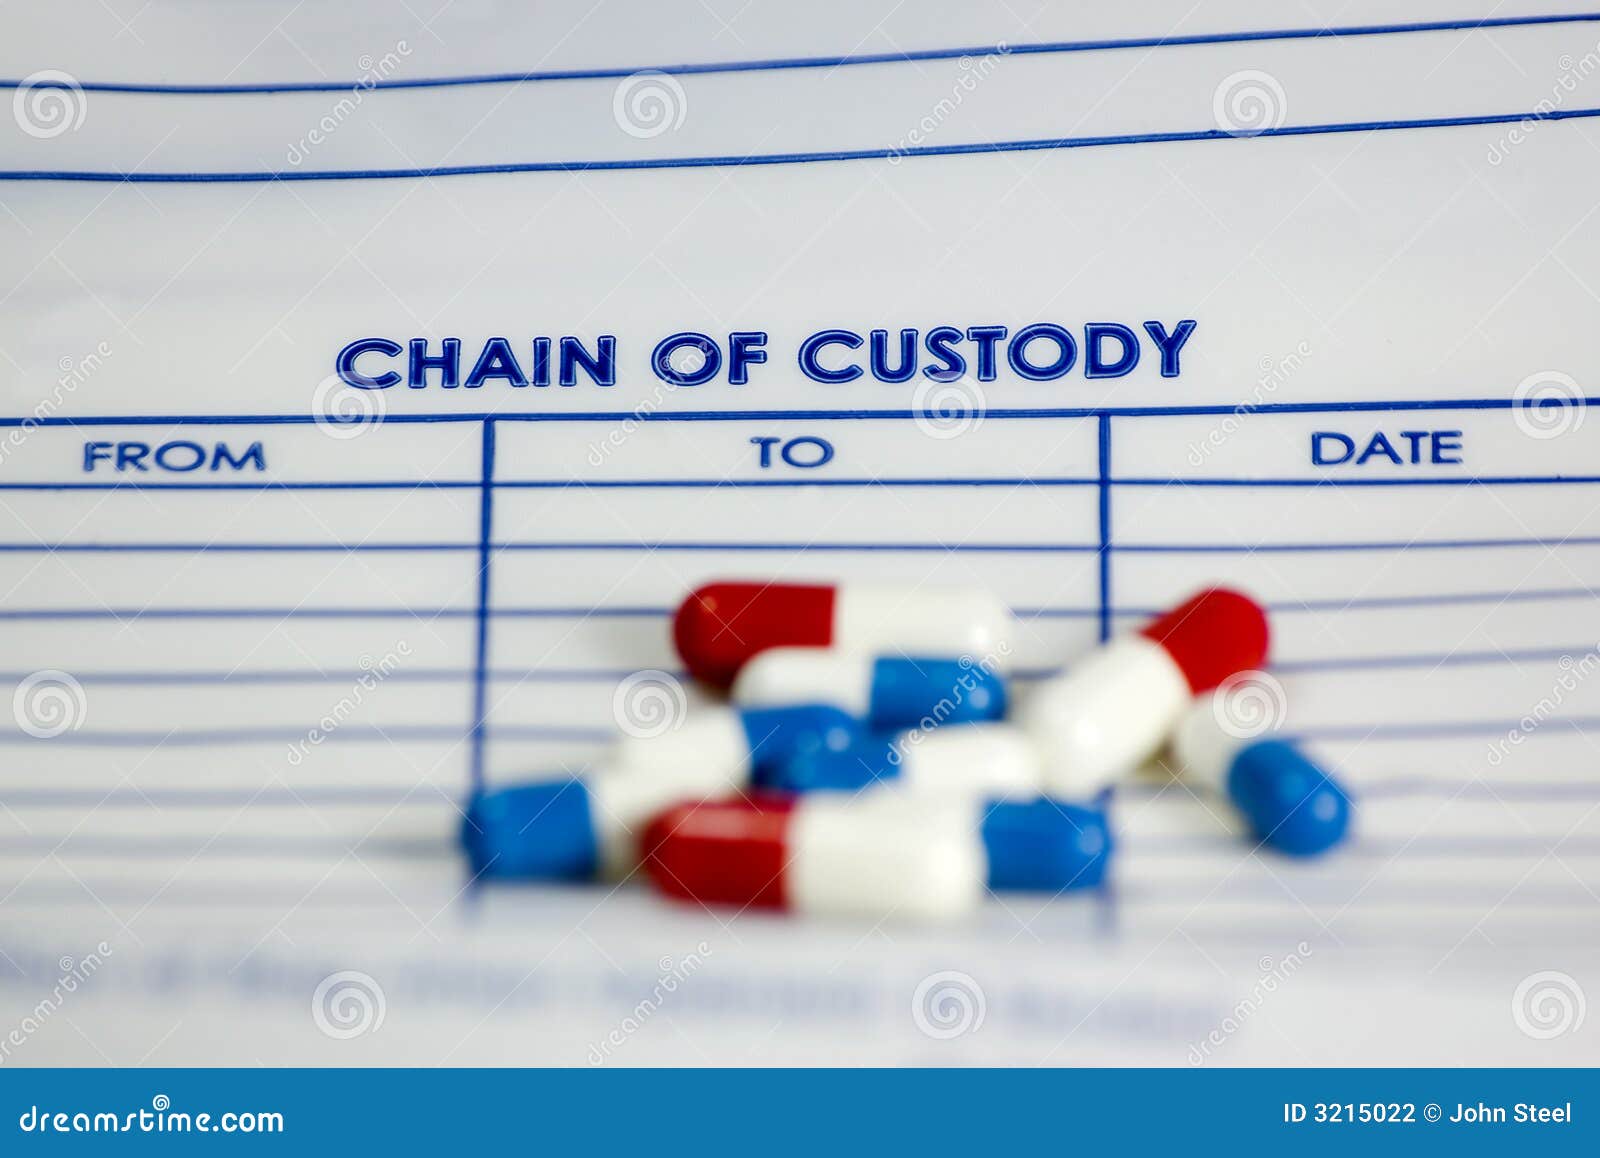 chain of custody